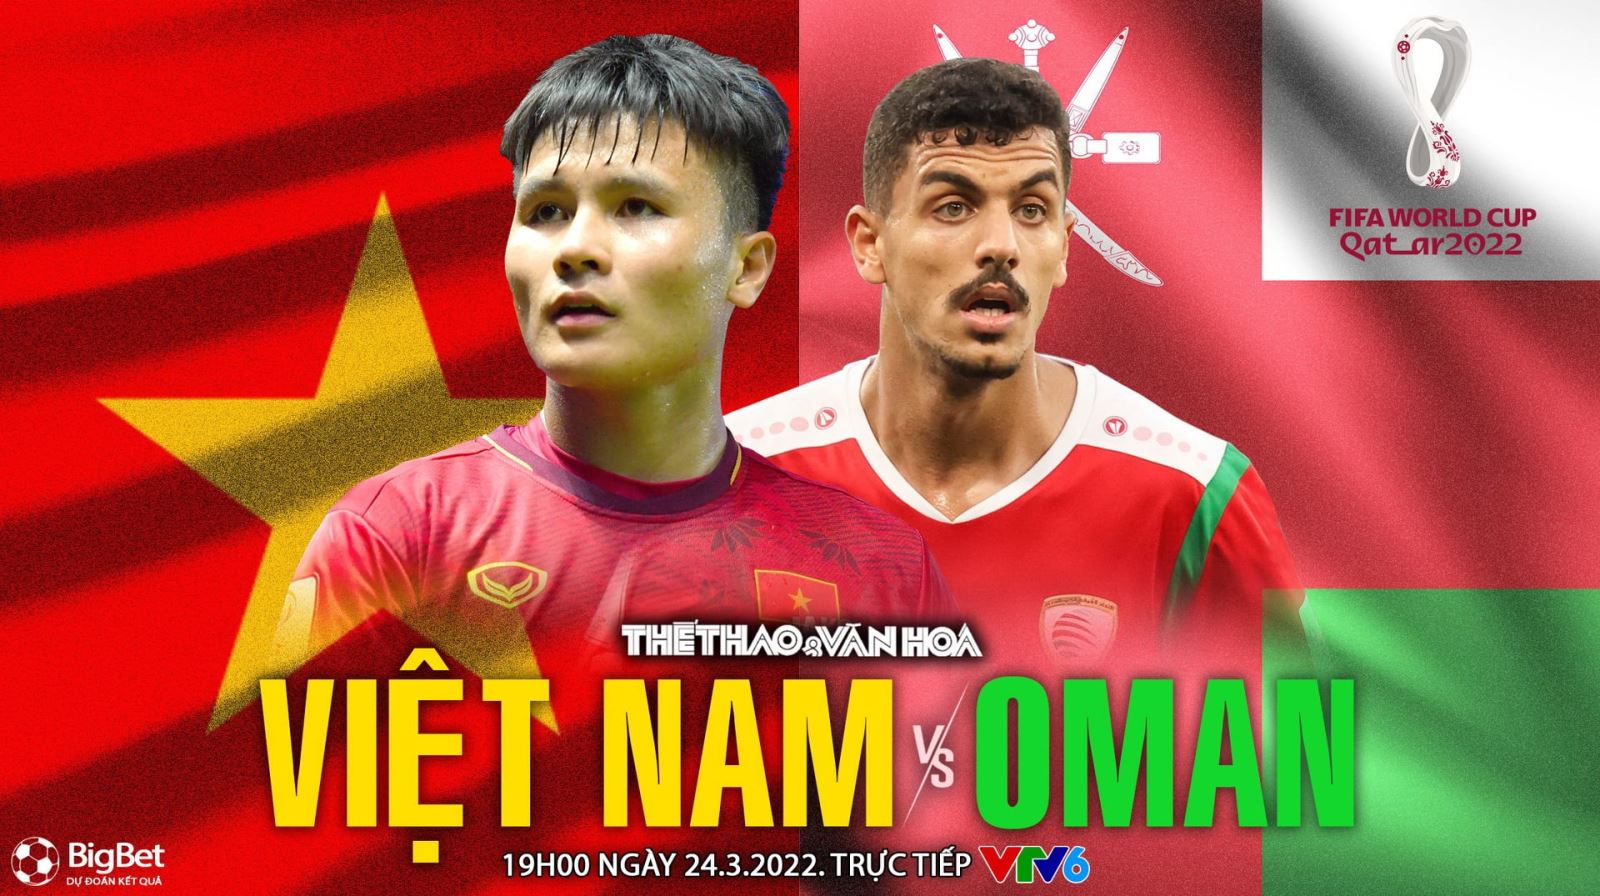 VIDEO Việt Nam vs Oman: VTV6 trực tiếp bóng đá, soi kèo nhà cái (19h00 hôm nay). VTV5, VTV6 trực tiếp bóng đá VN vs Oman, vòng loại World Cup 2022.